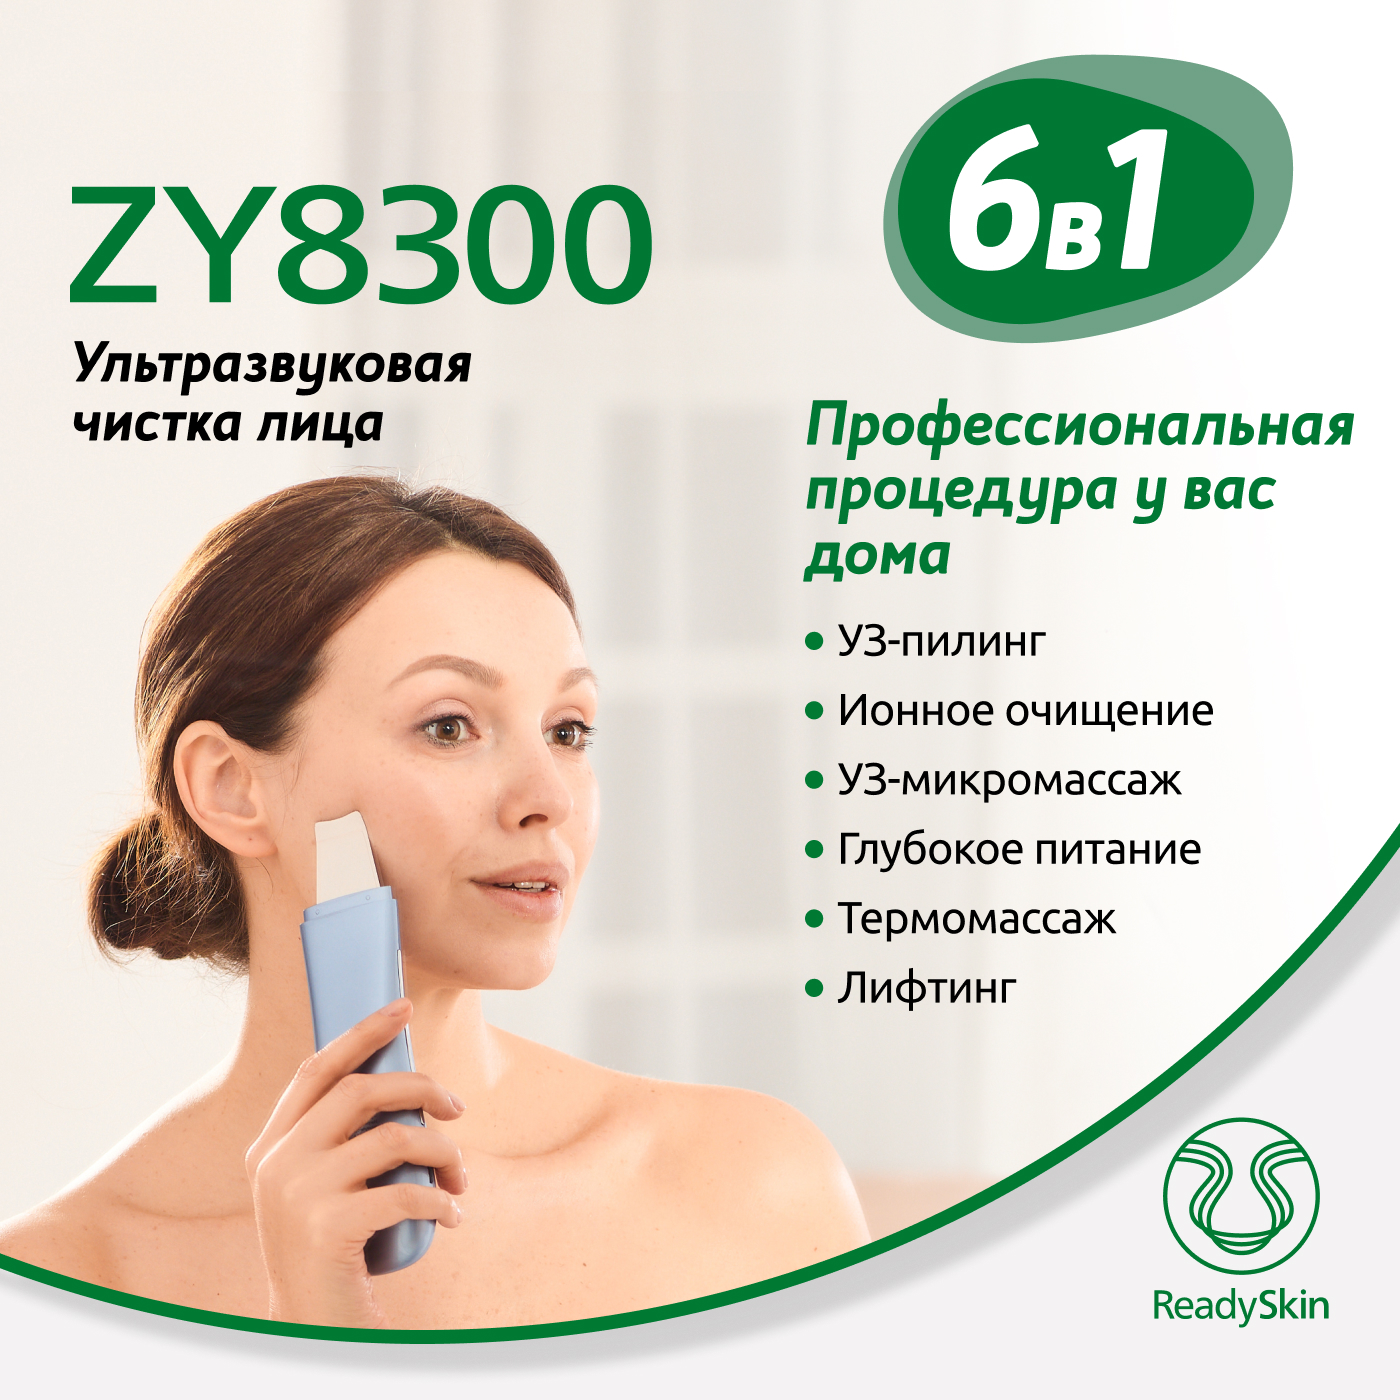 Купить аппарат ReadySkin ZY8300 для ультразвуковой чистки, ионофореза и термомассажа лица, цены на Мегамаркет | Артикул: 600003099523